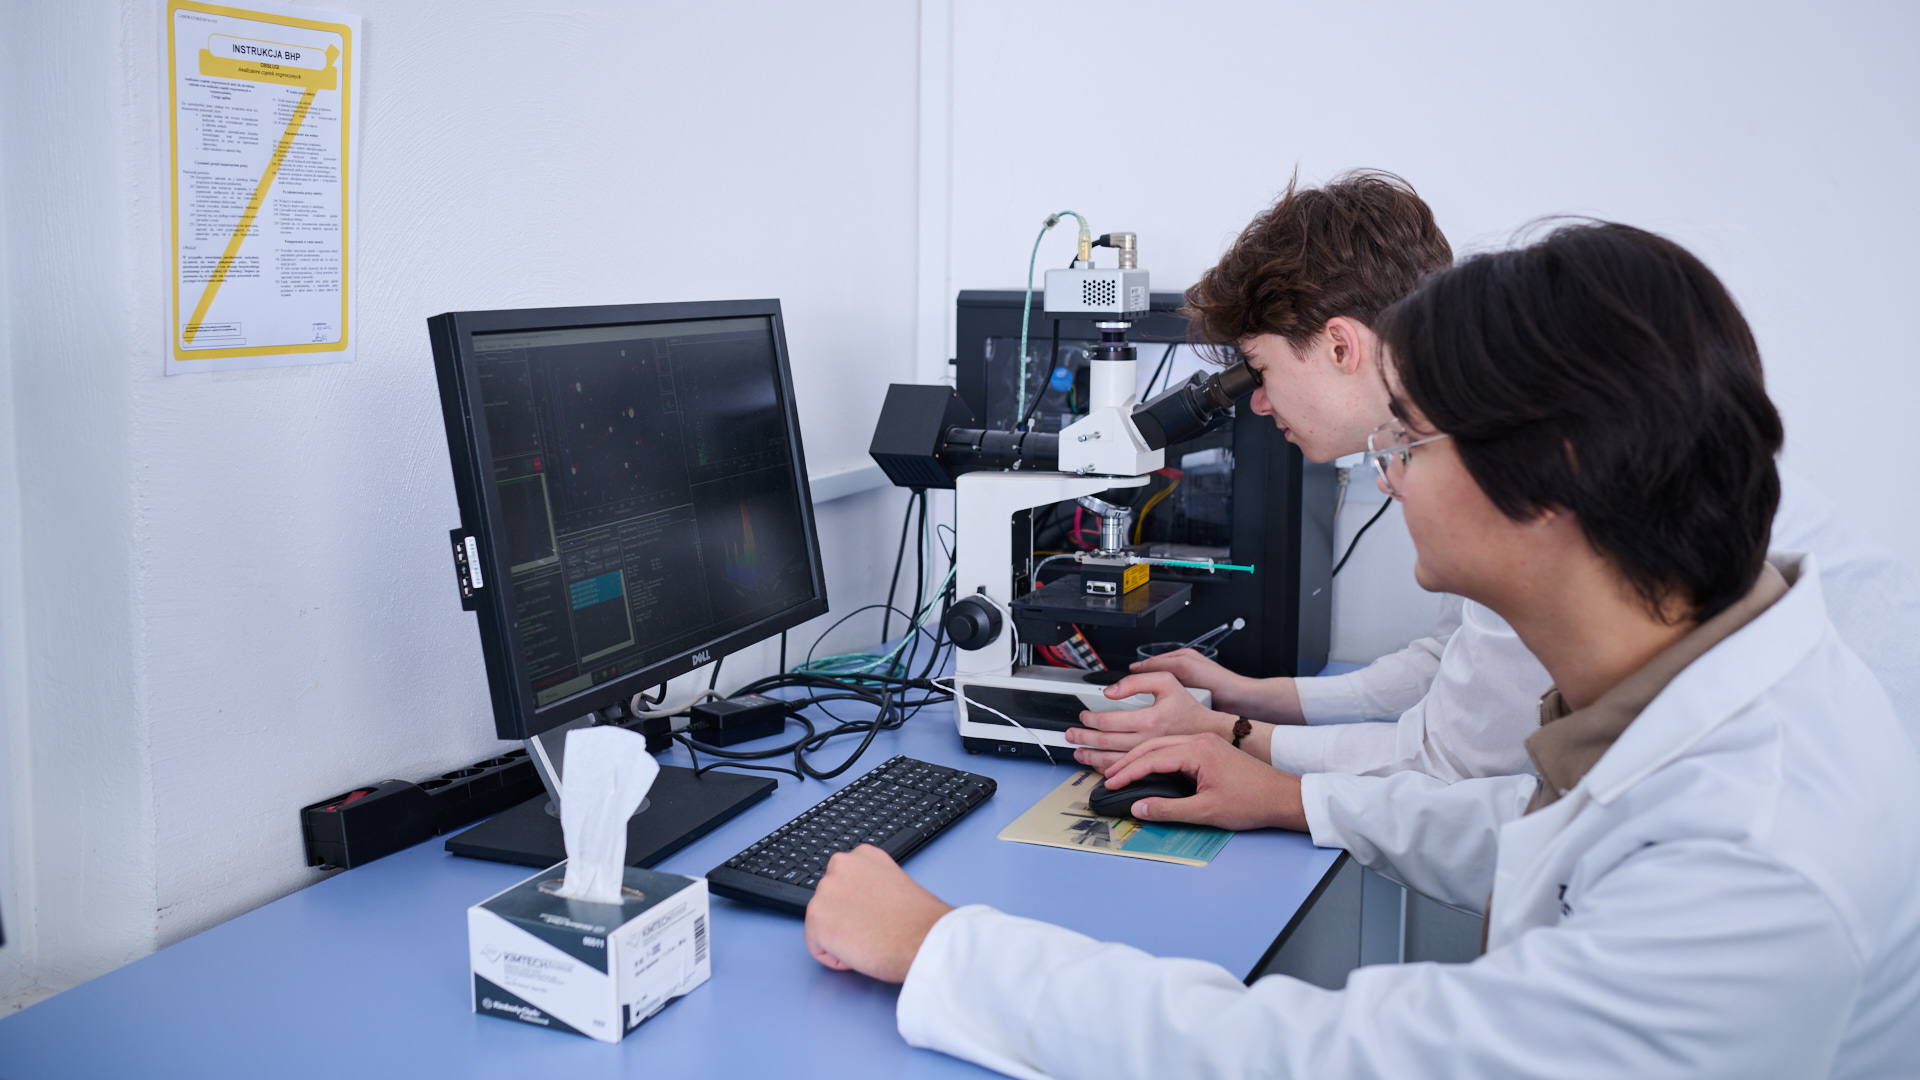 Na zdjęciu dwie osoby siedzące przy komputerze i mikroskopie